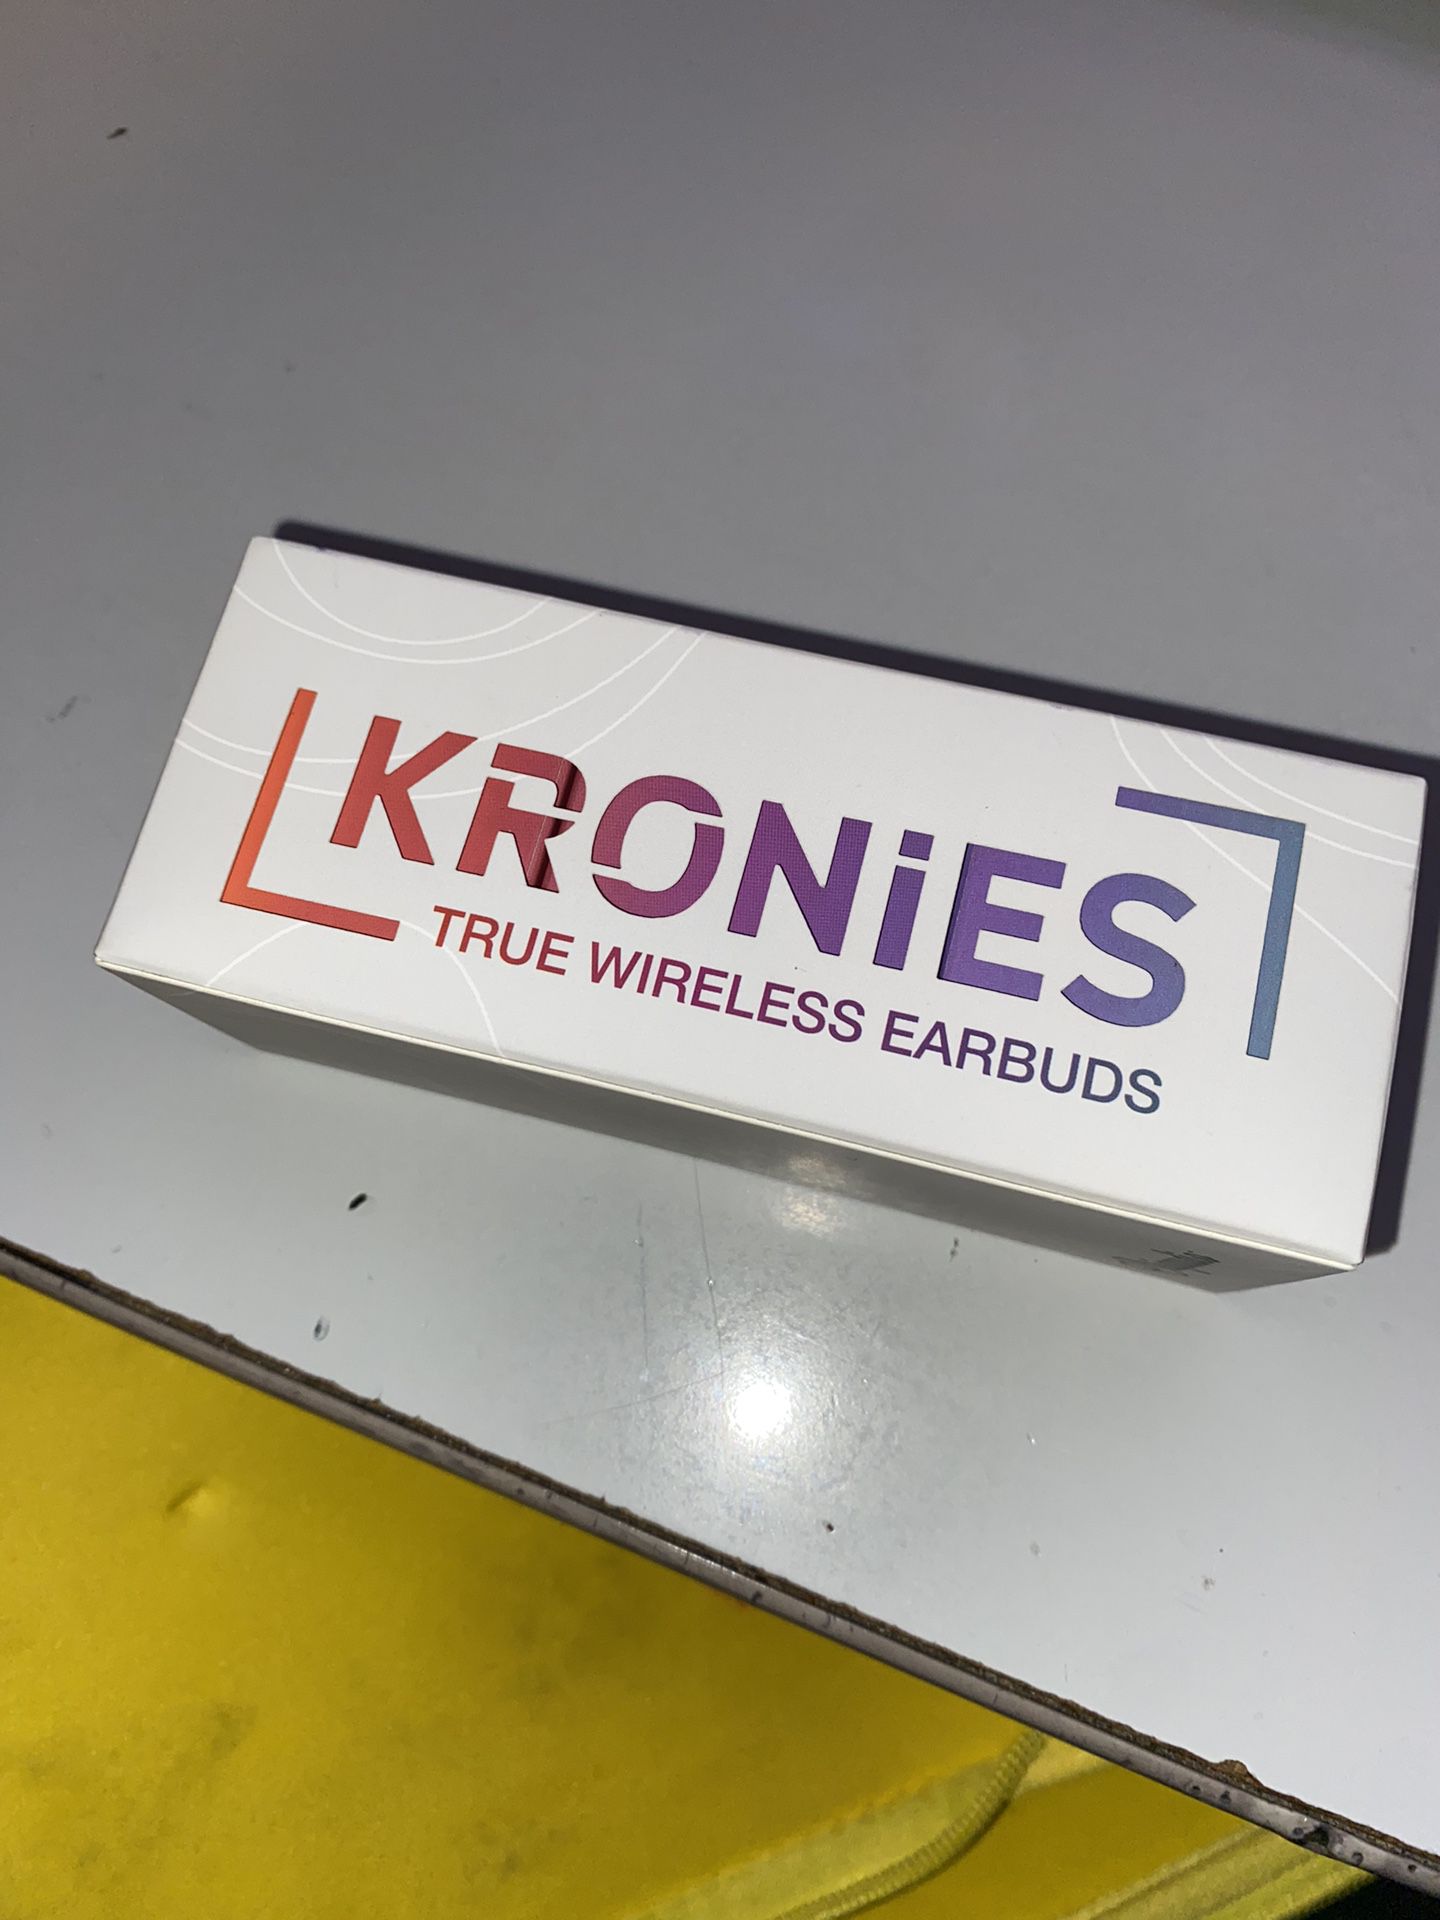 Kronies True Wireless Earbuds 